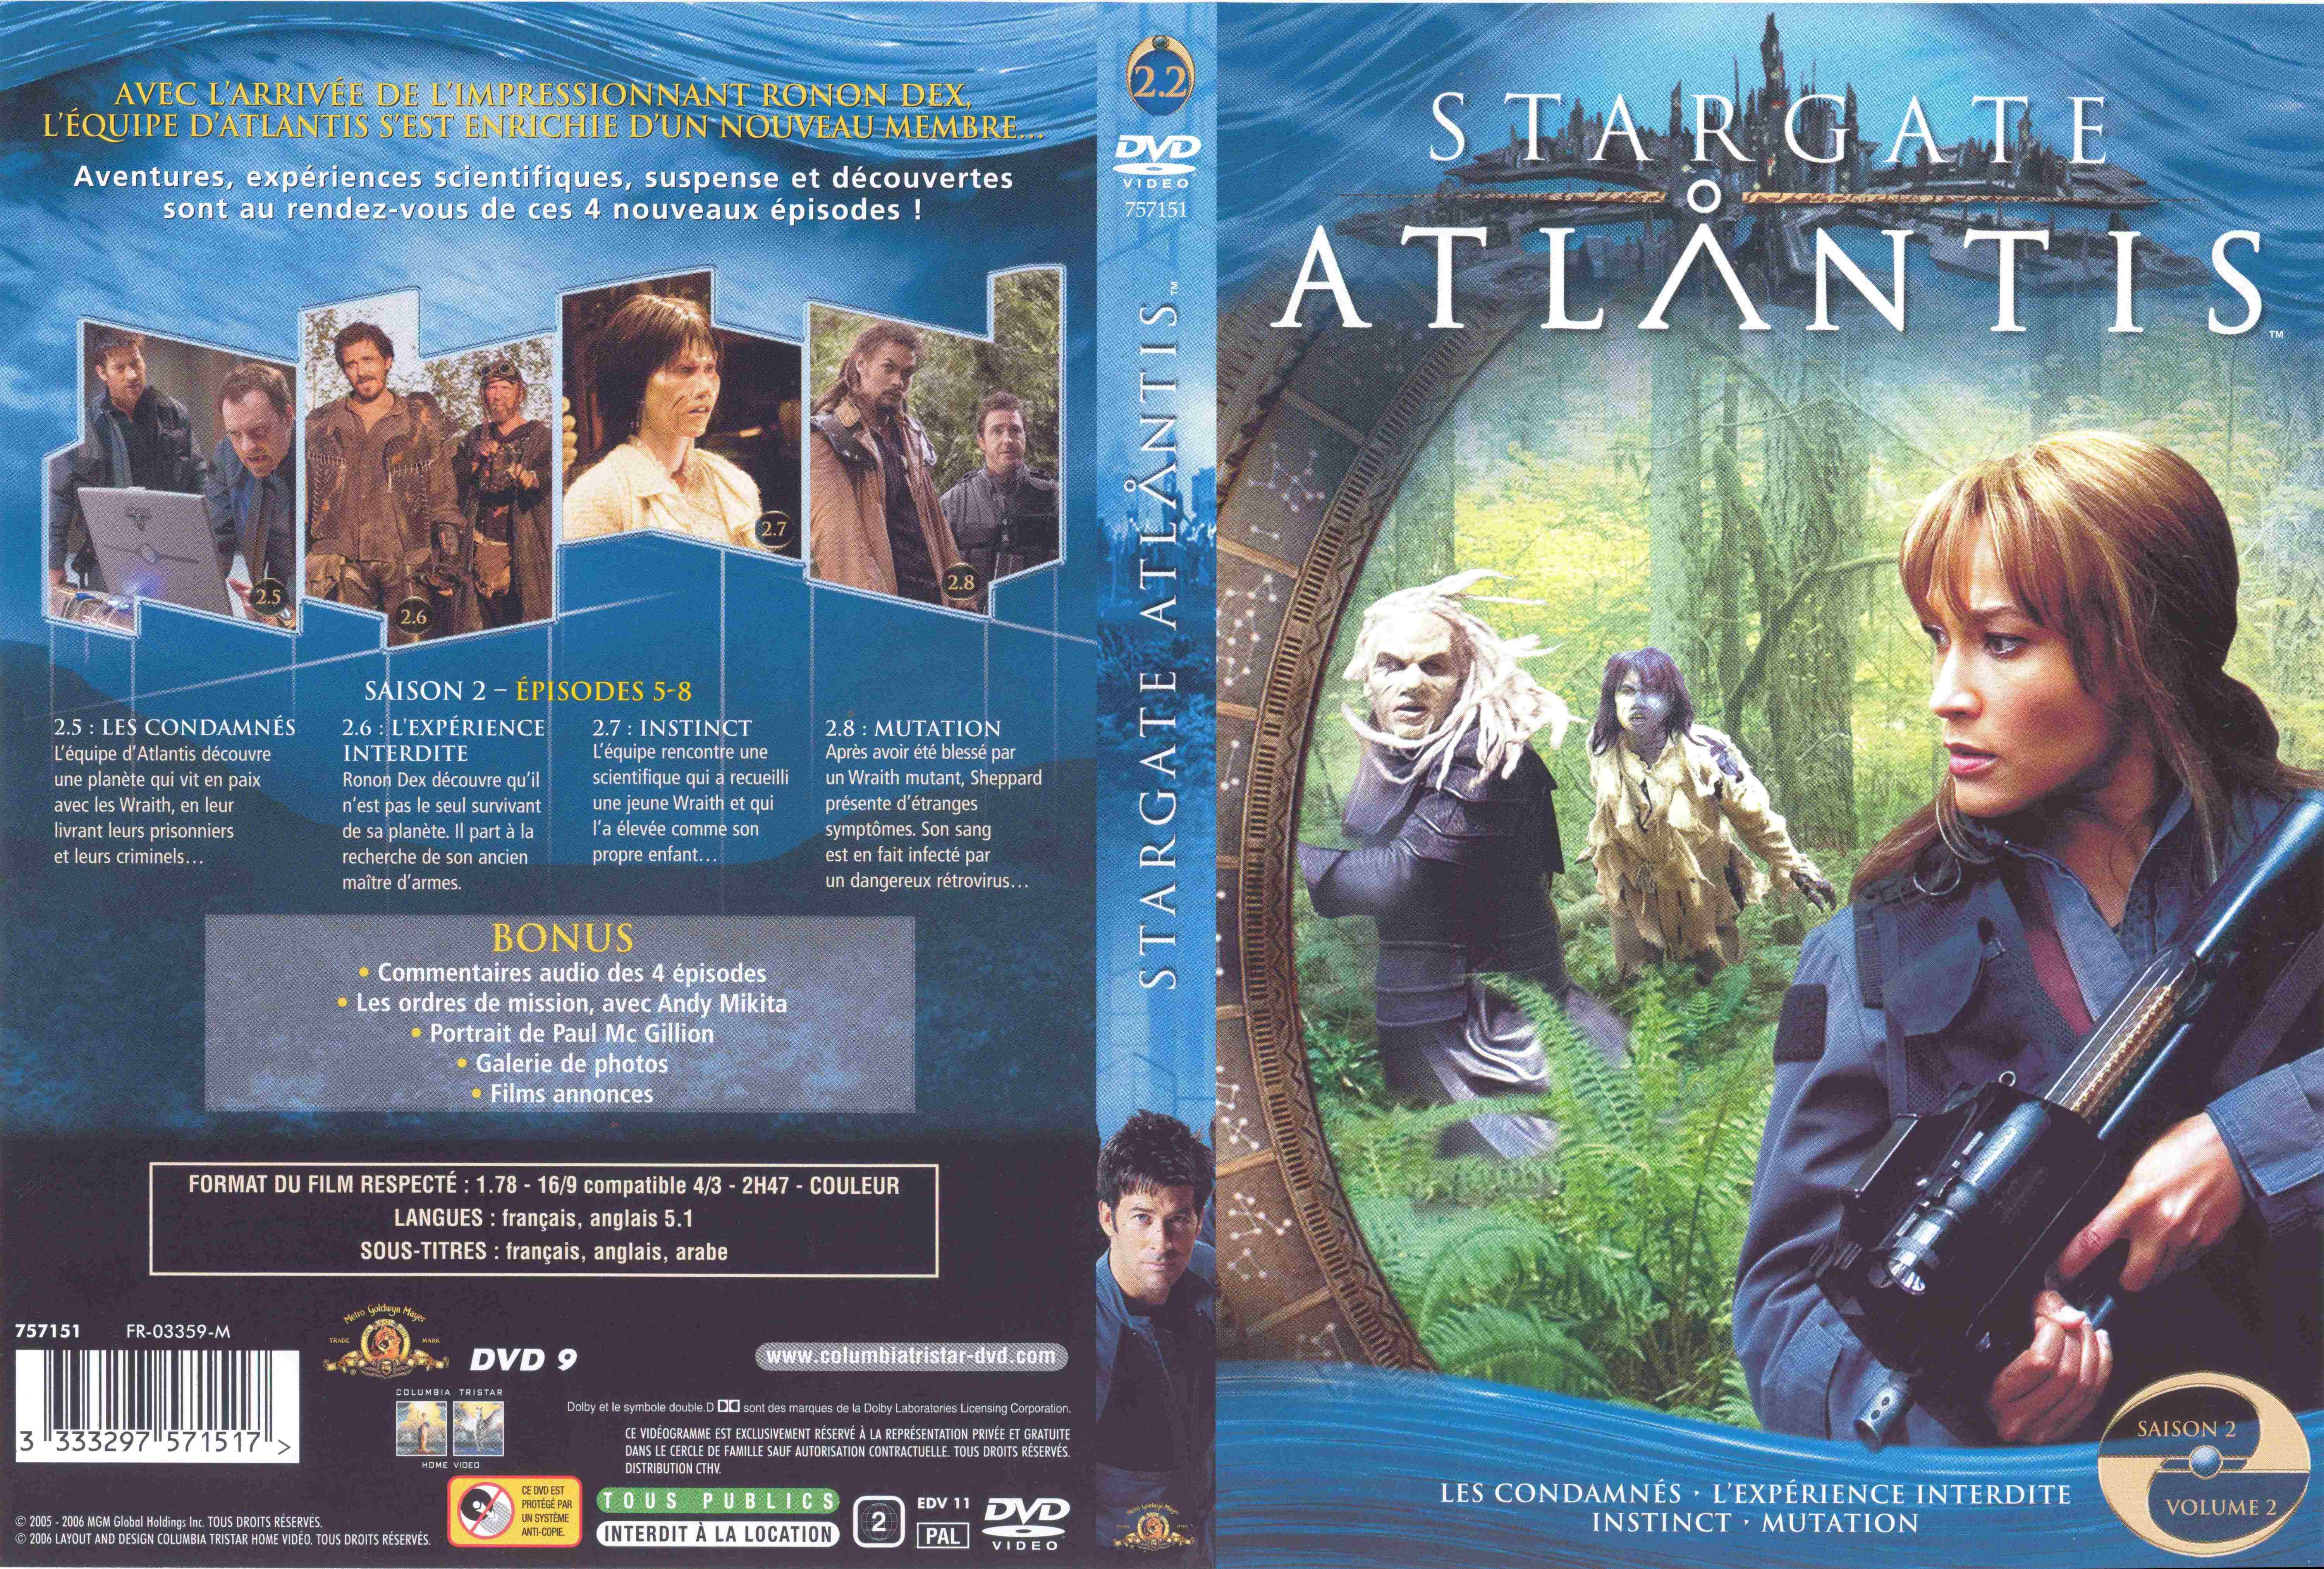 Jaquette DVD Stargate Atlantis saison 2 vol 2